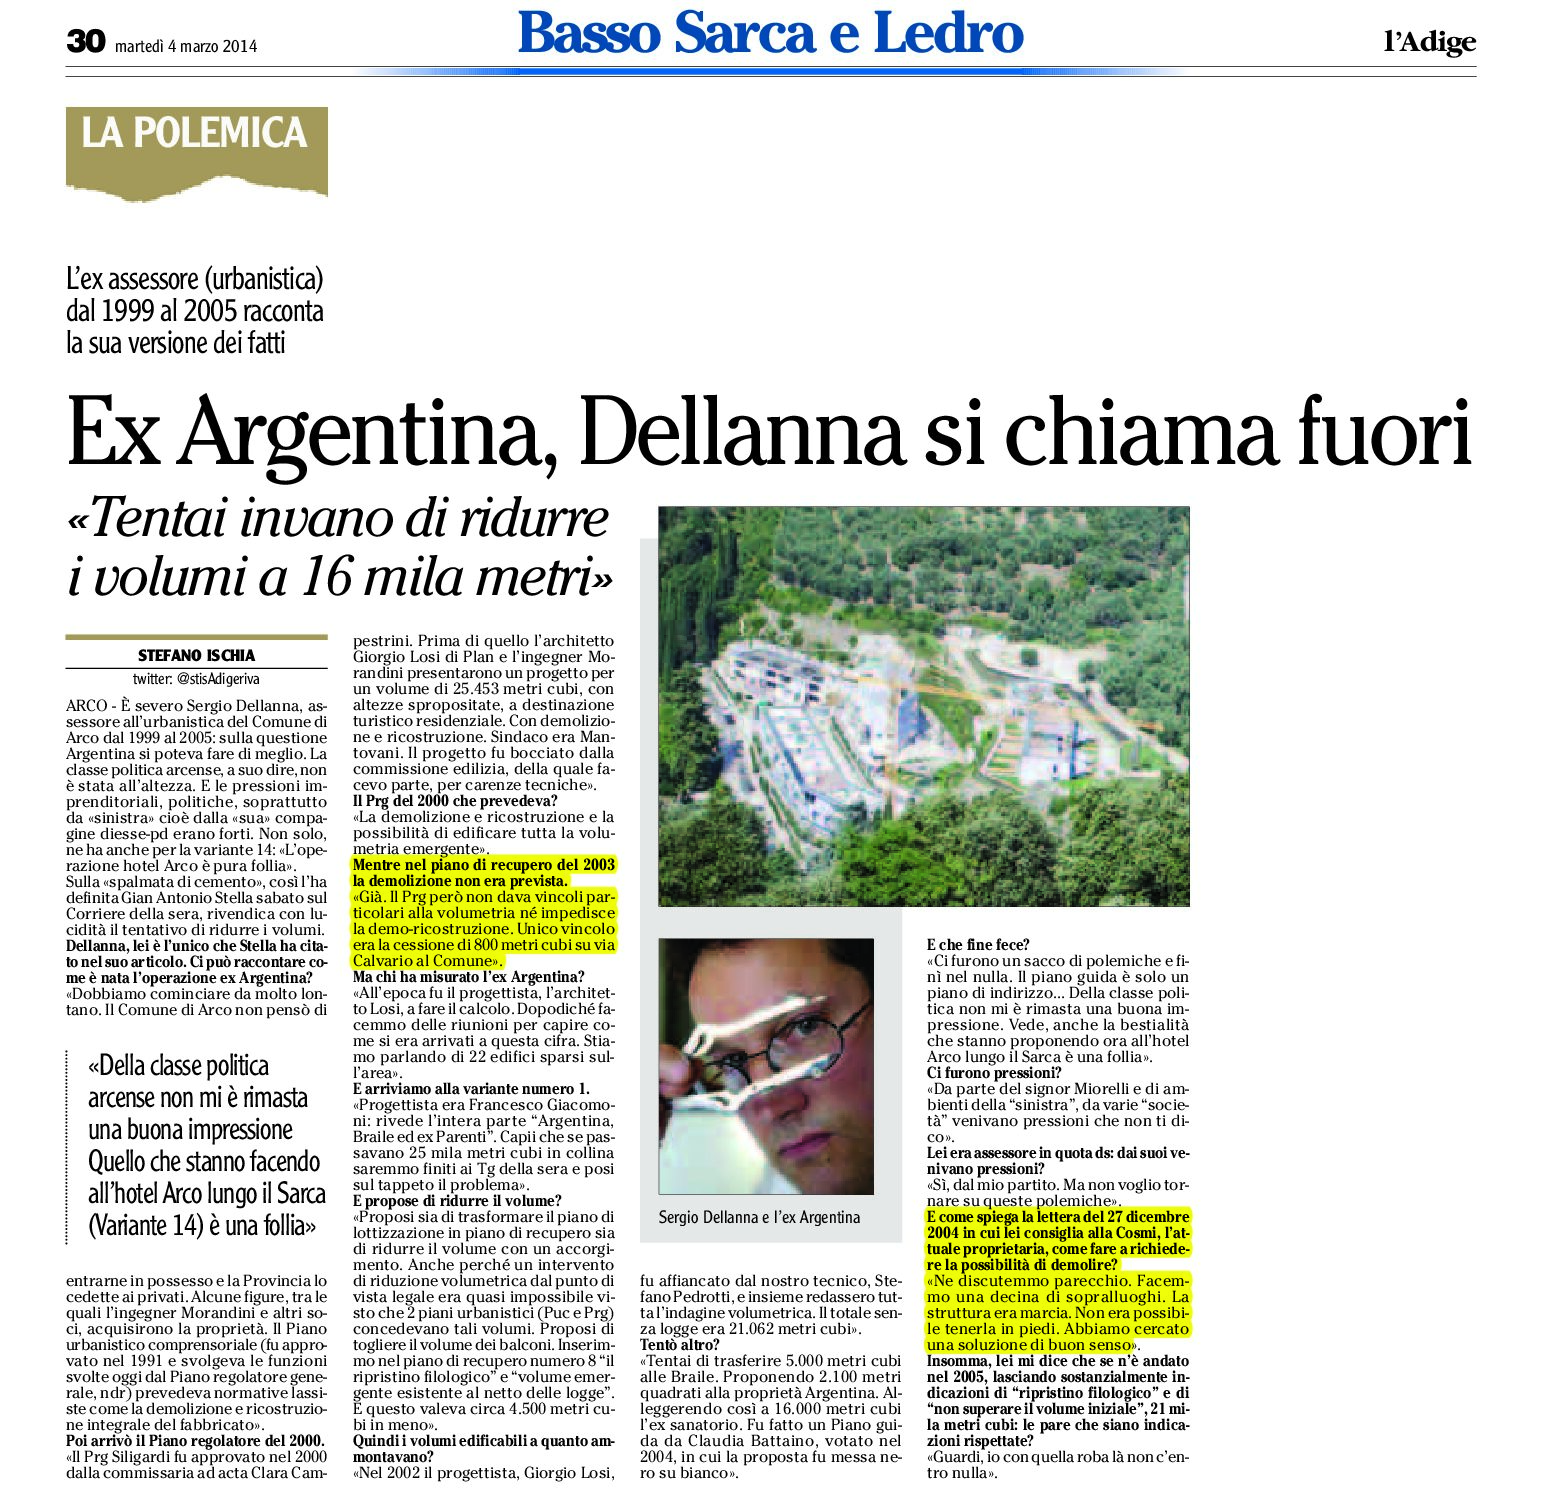 Arco: Ex Argentina, Dellanna si chiama fuori